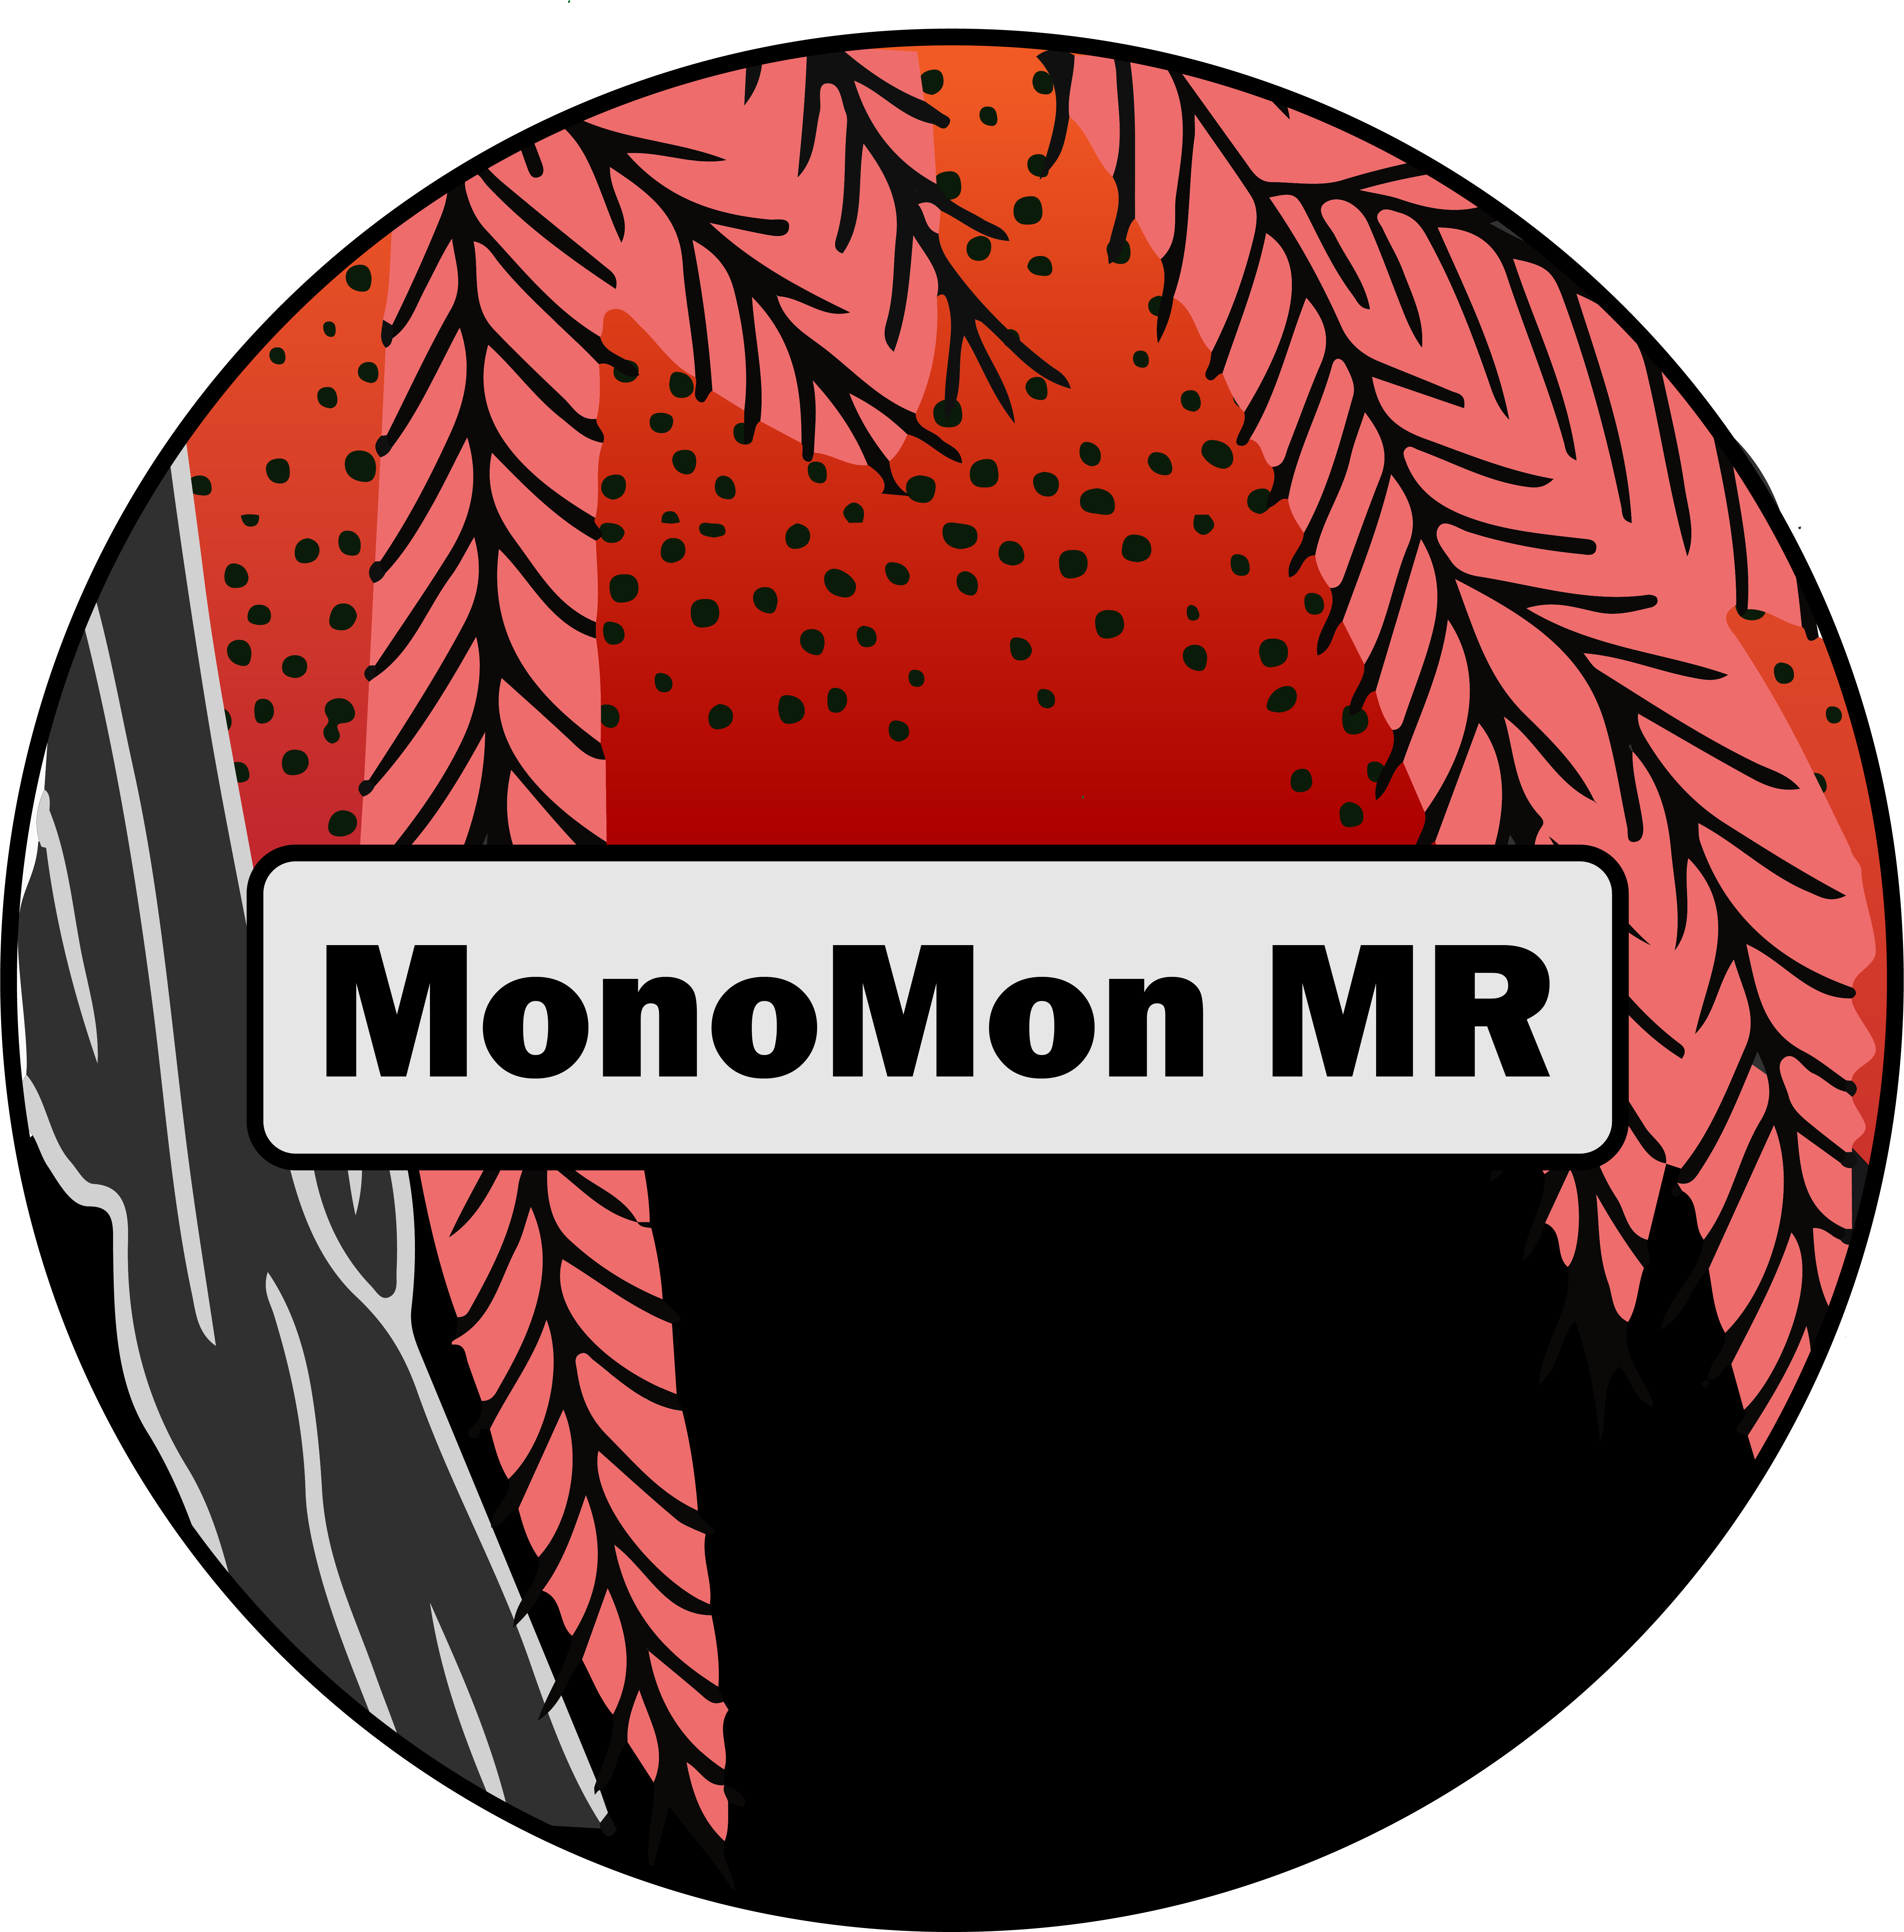 MonoMon MR